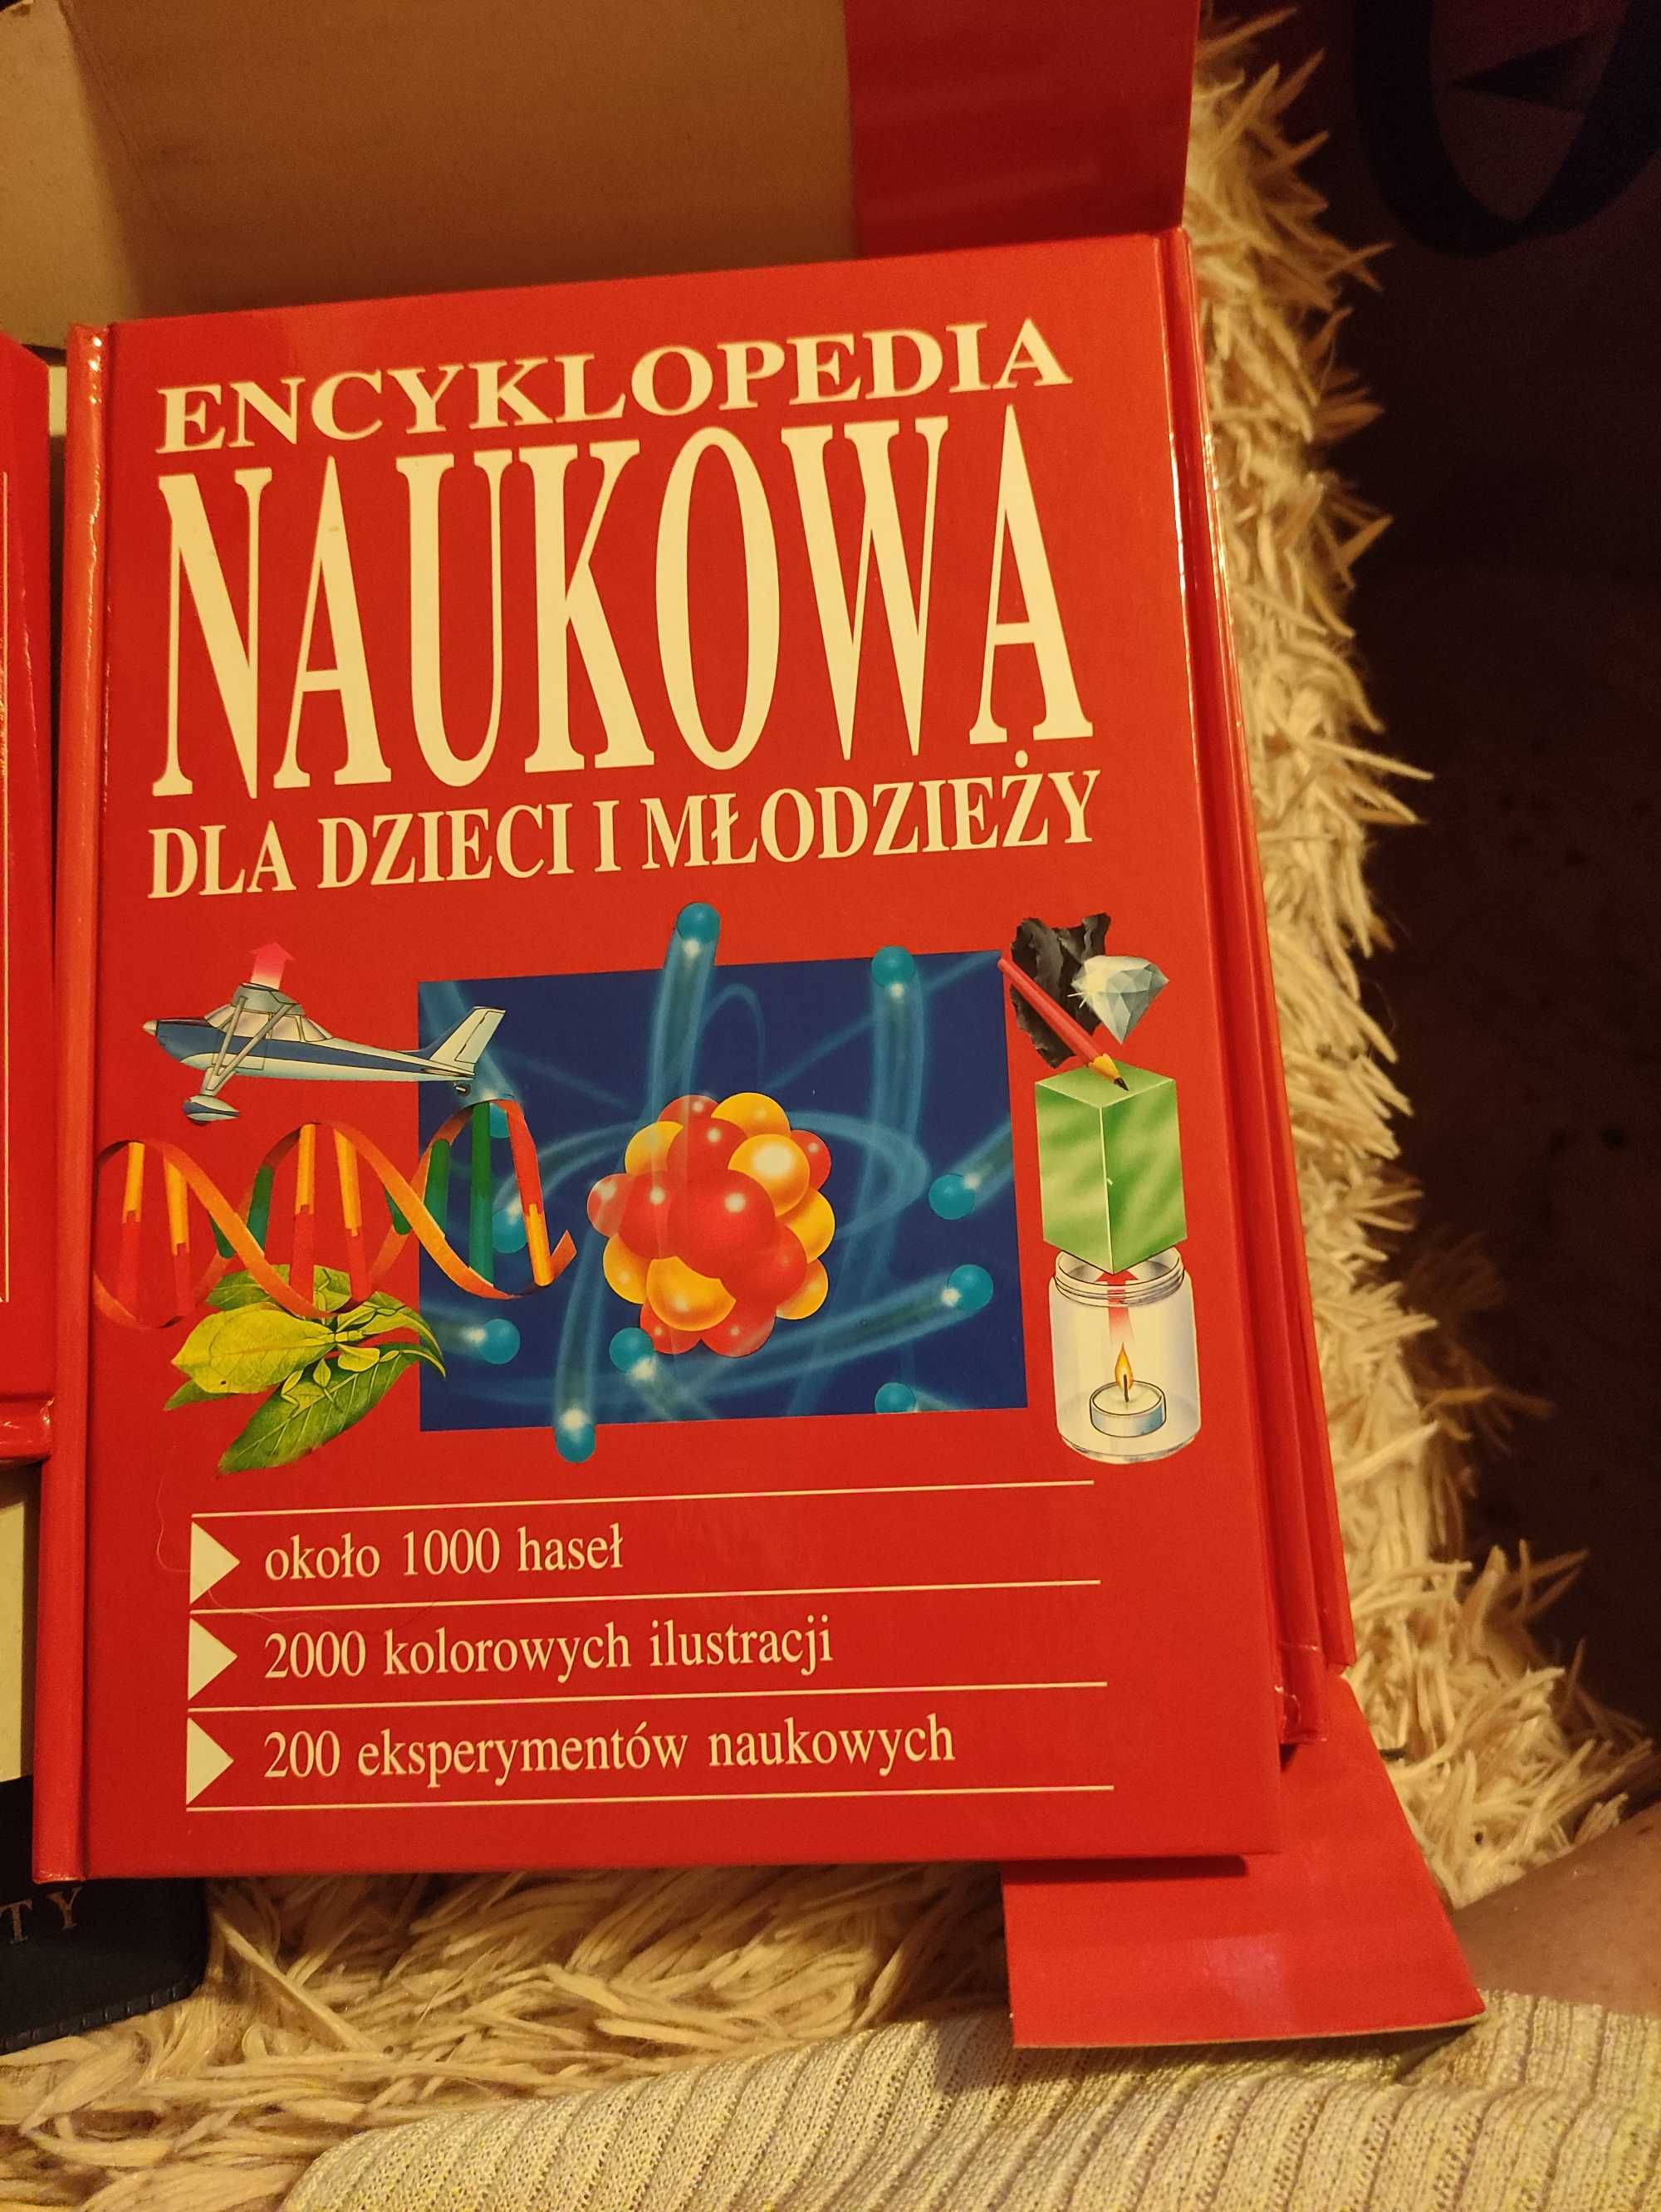 Encyklopedia naukowa dla dzieci 5 tomów. Muza SA rok 2001